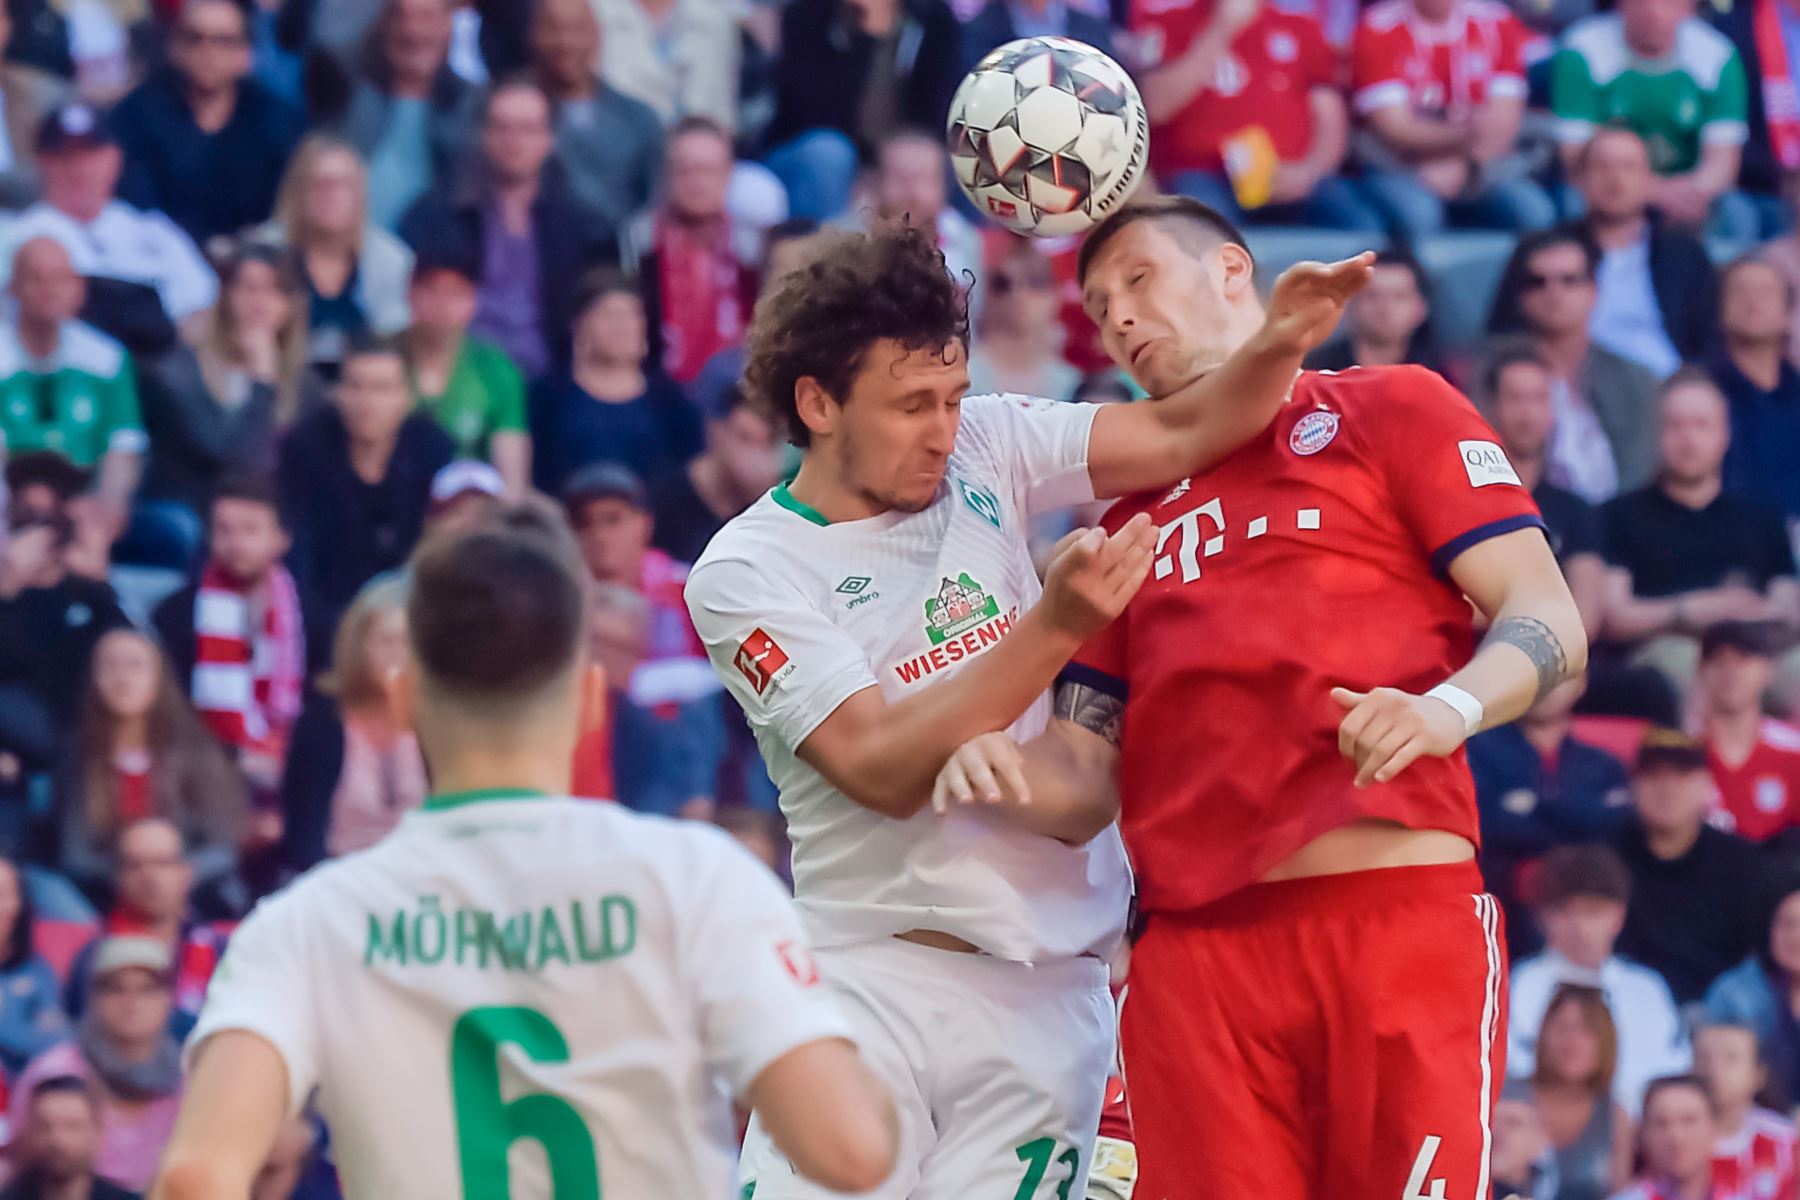 El defensor serbio de Bremen, Milos Veljkovic (L) comete falta contra el defensor alemán de Bayern Munich, Niklas Suele, durante el partido de fútbol de la Bundesliga de la primera división alemana FC Bayern Munich contra SV Werder Bremen.Foto: AFP